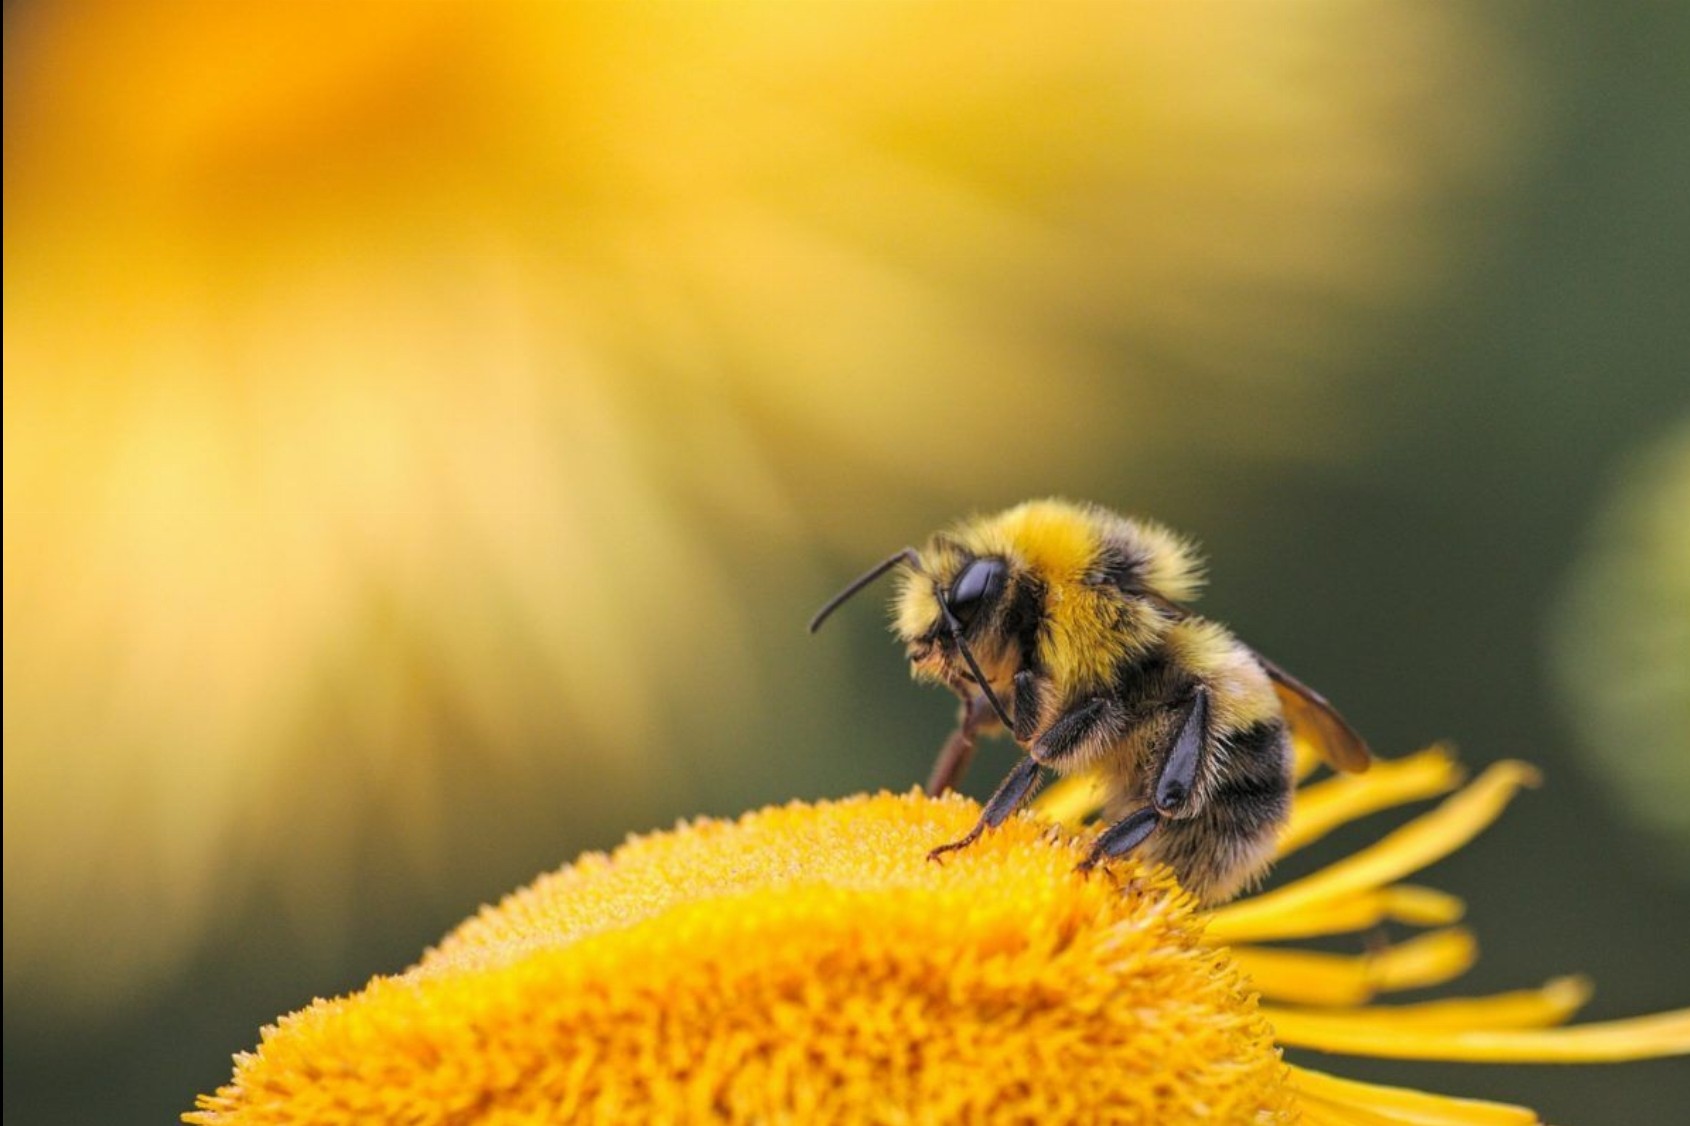 Wereld BijenDag - World Bee Day + Fotowedstrijd